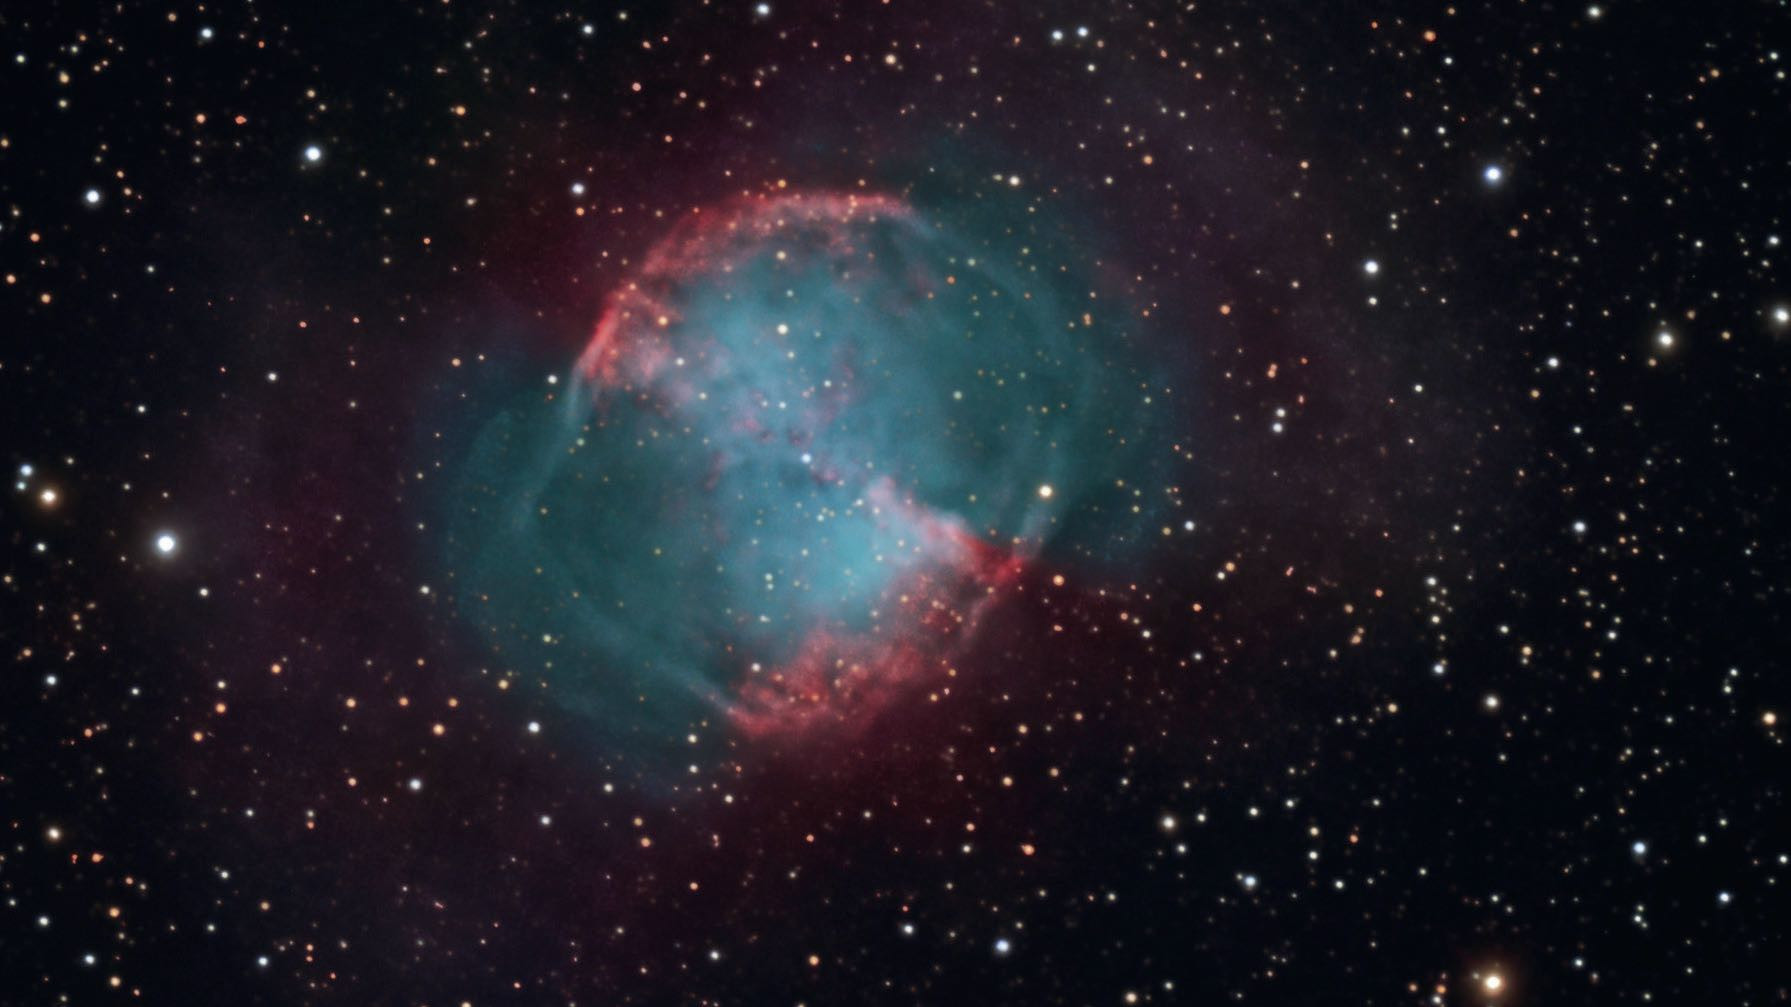 La nebulosa planetaria M27 también puede ser un objeto gratificante para observar desde la ciudad. Además, con un filtro incluso se puede visualizar el efecto de la mancuerna. Sebastian Voltmer / CCD Guide